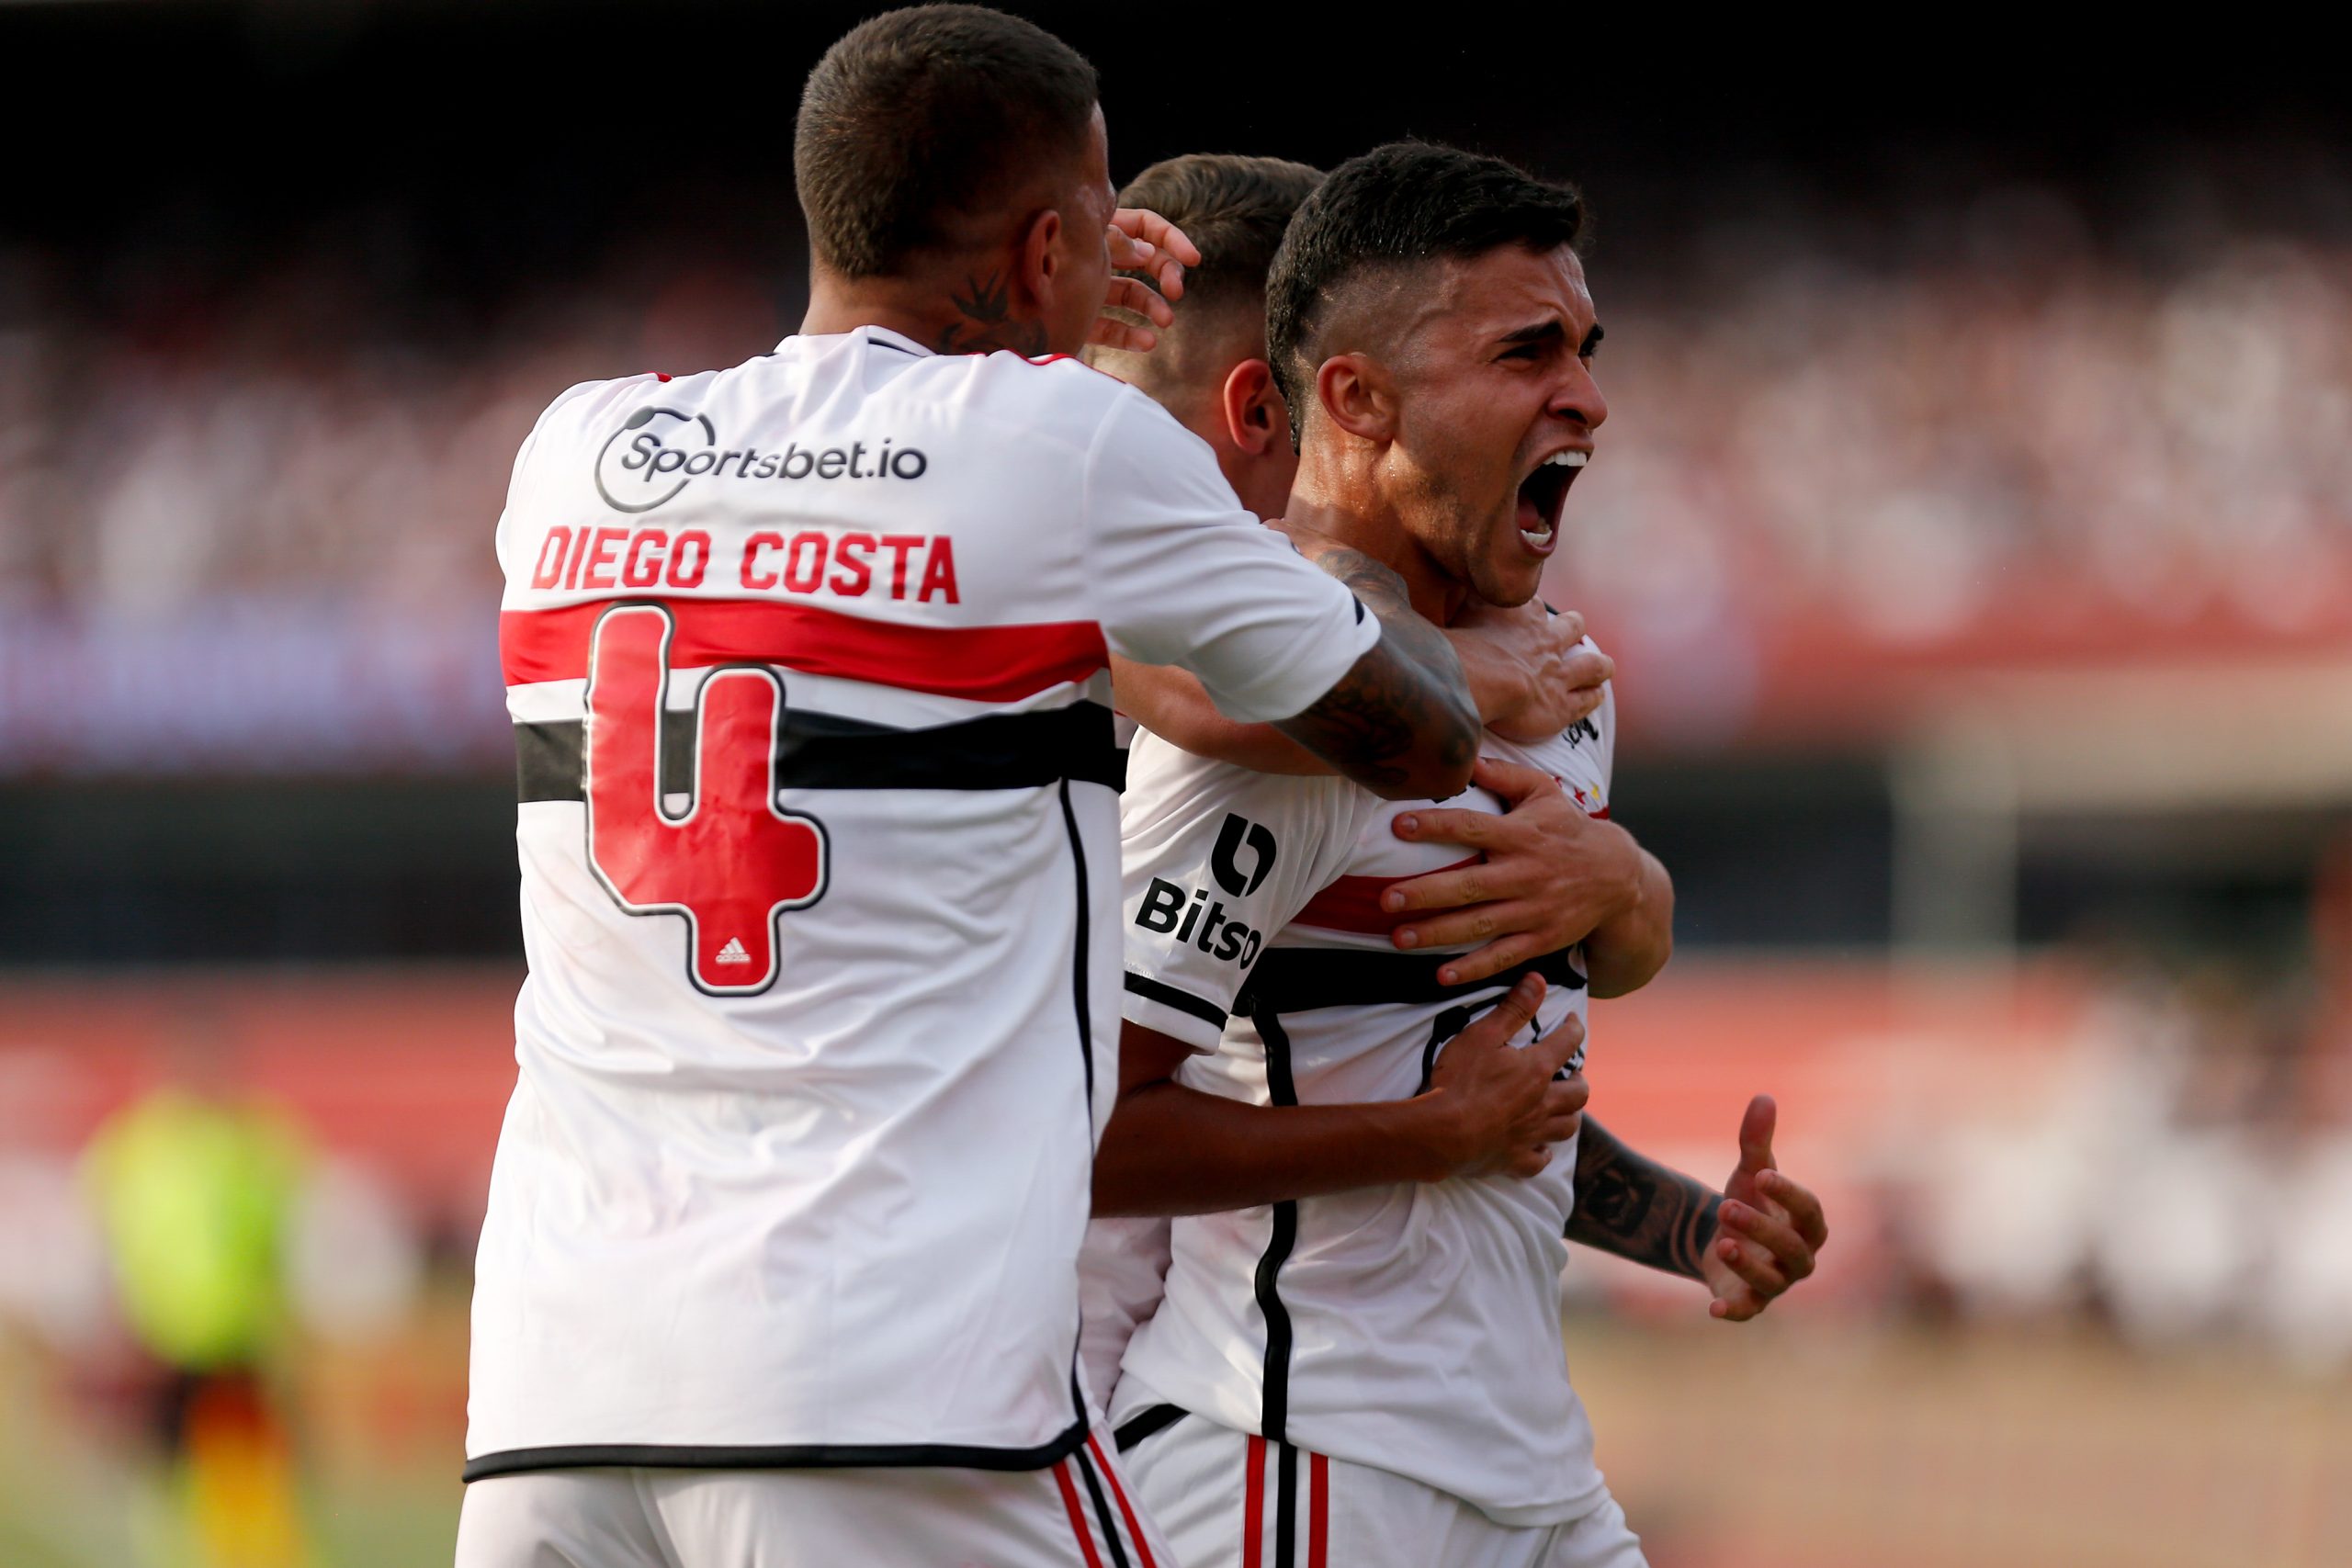 Nestor comemora título pelo São Paulo e gol marcado: 'Nem acredito que aconteceu' . (Photo by Ricardo Moreira/Getty Images)